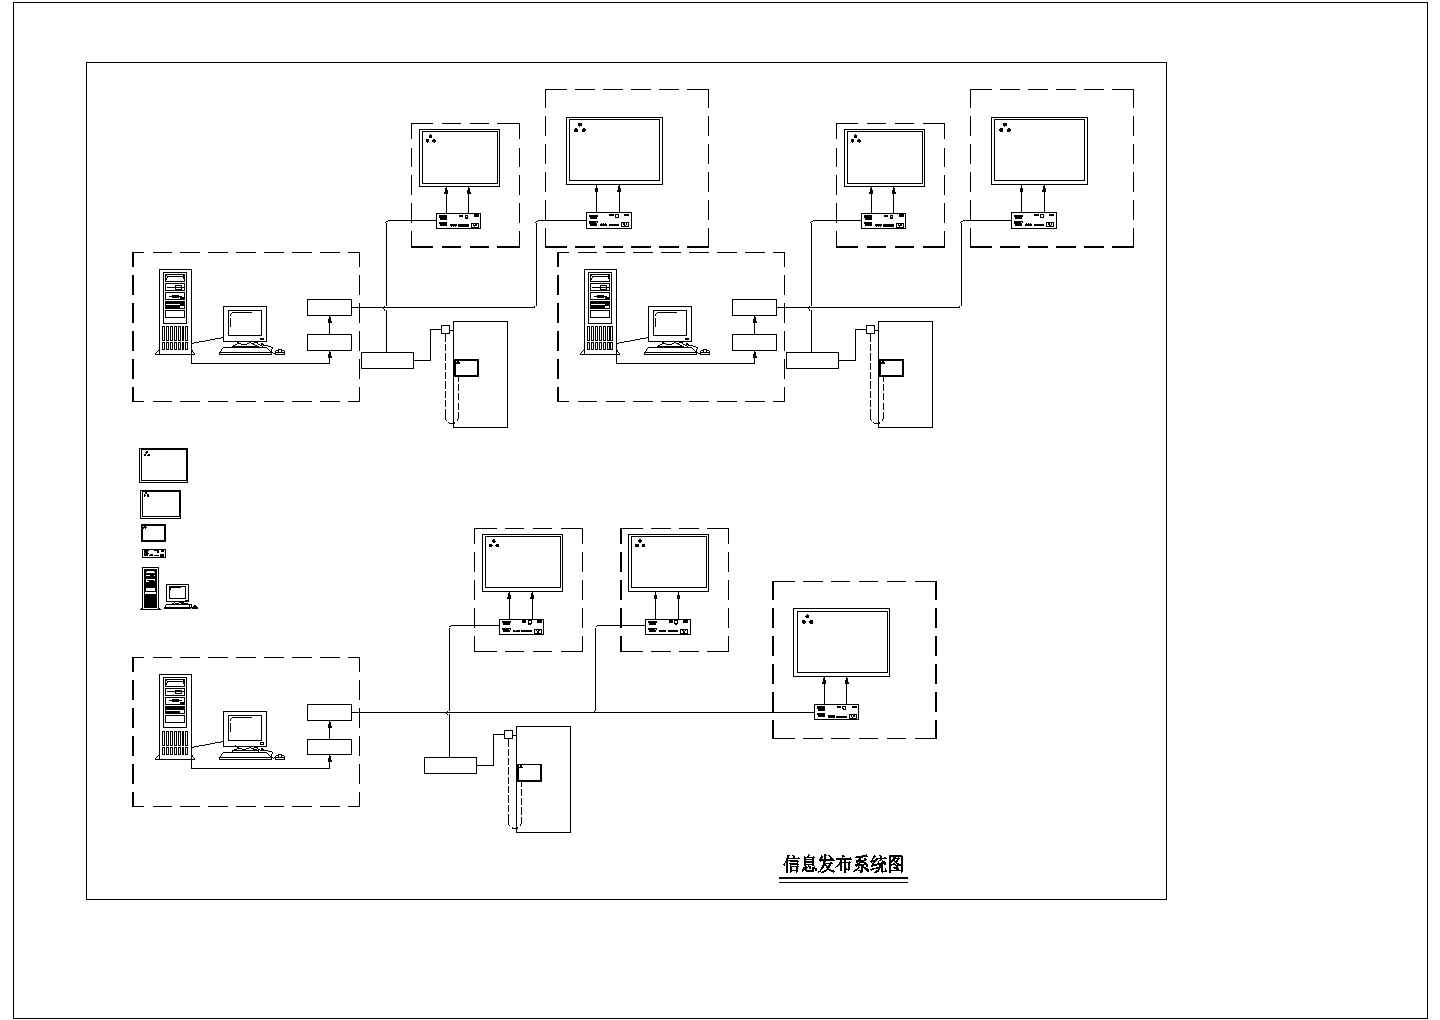 华北电信集团信息发布室系统图